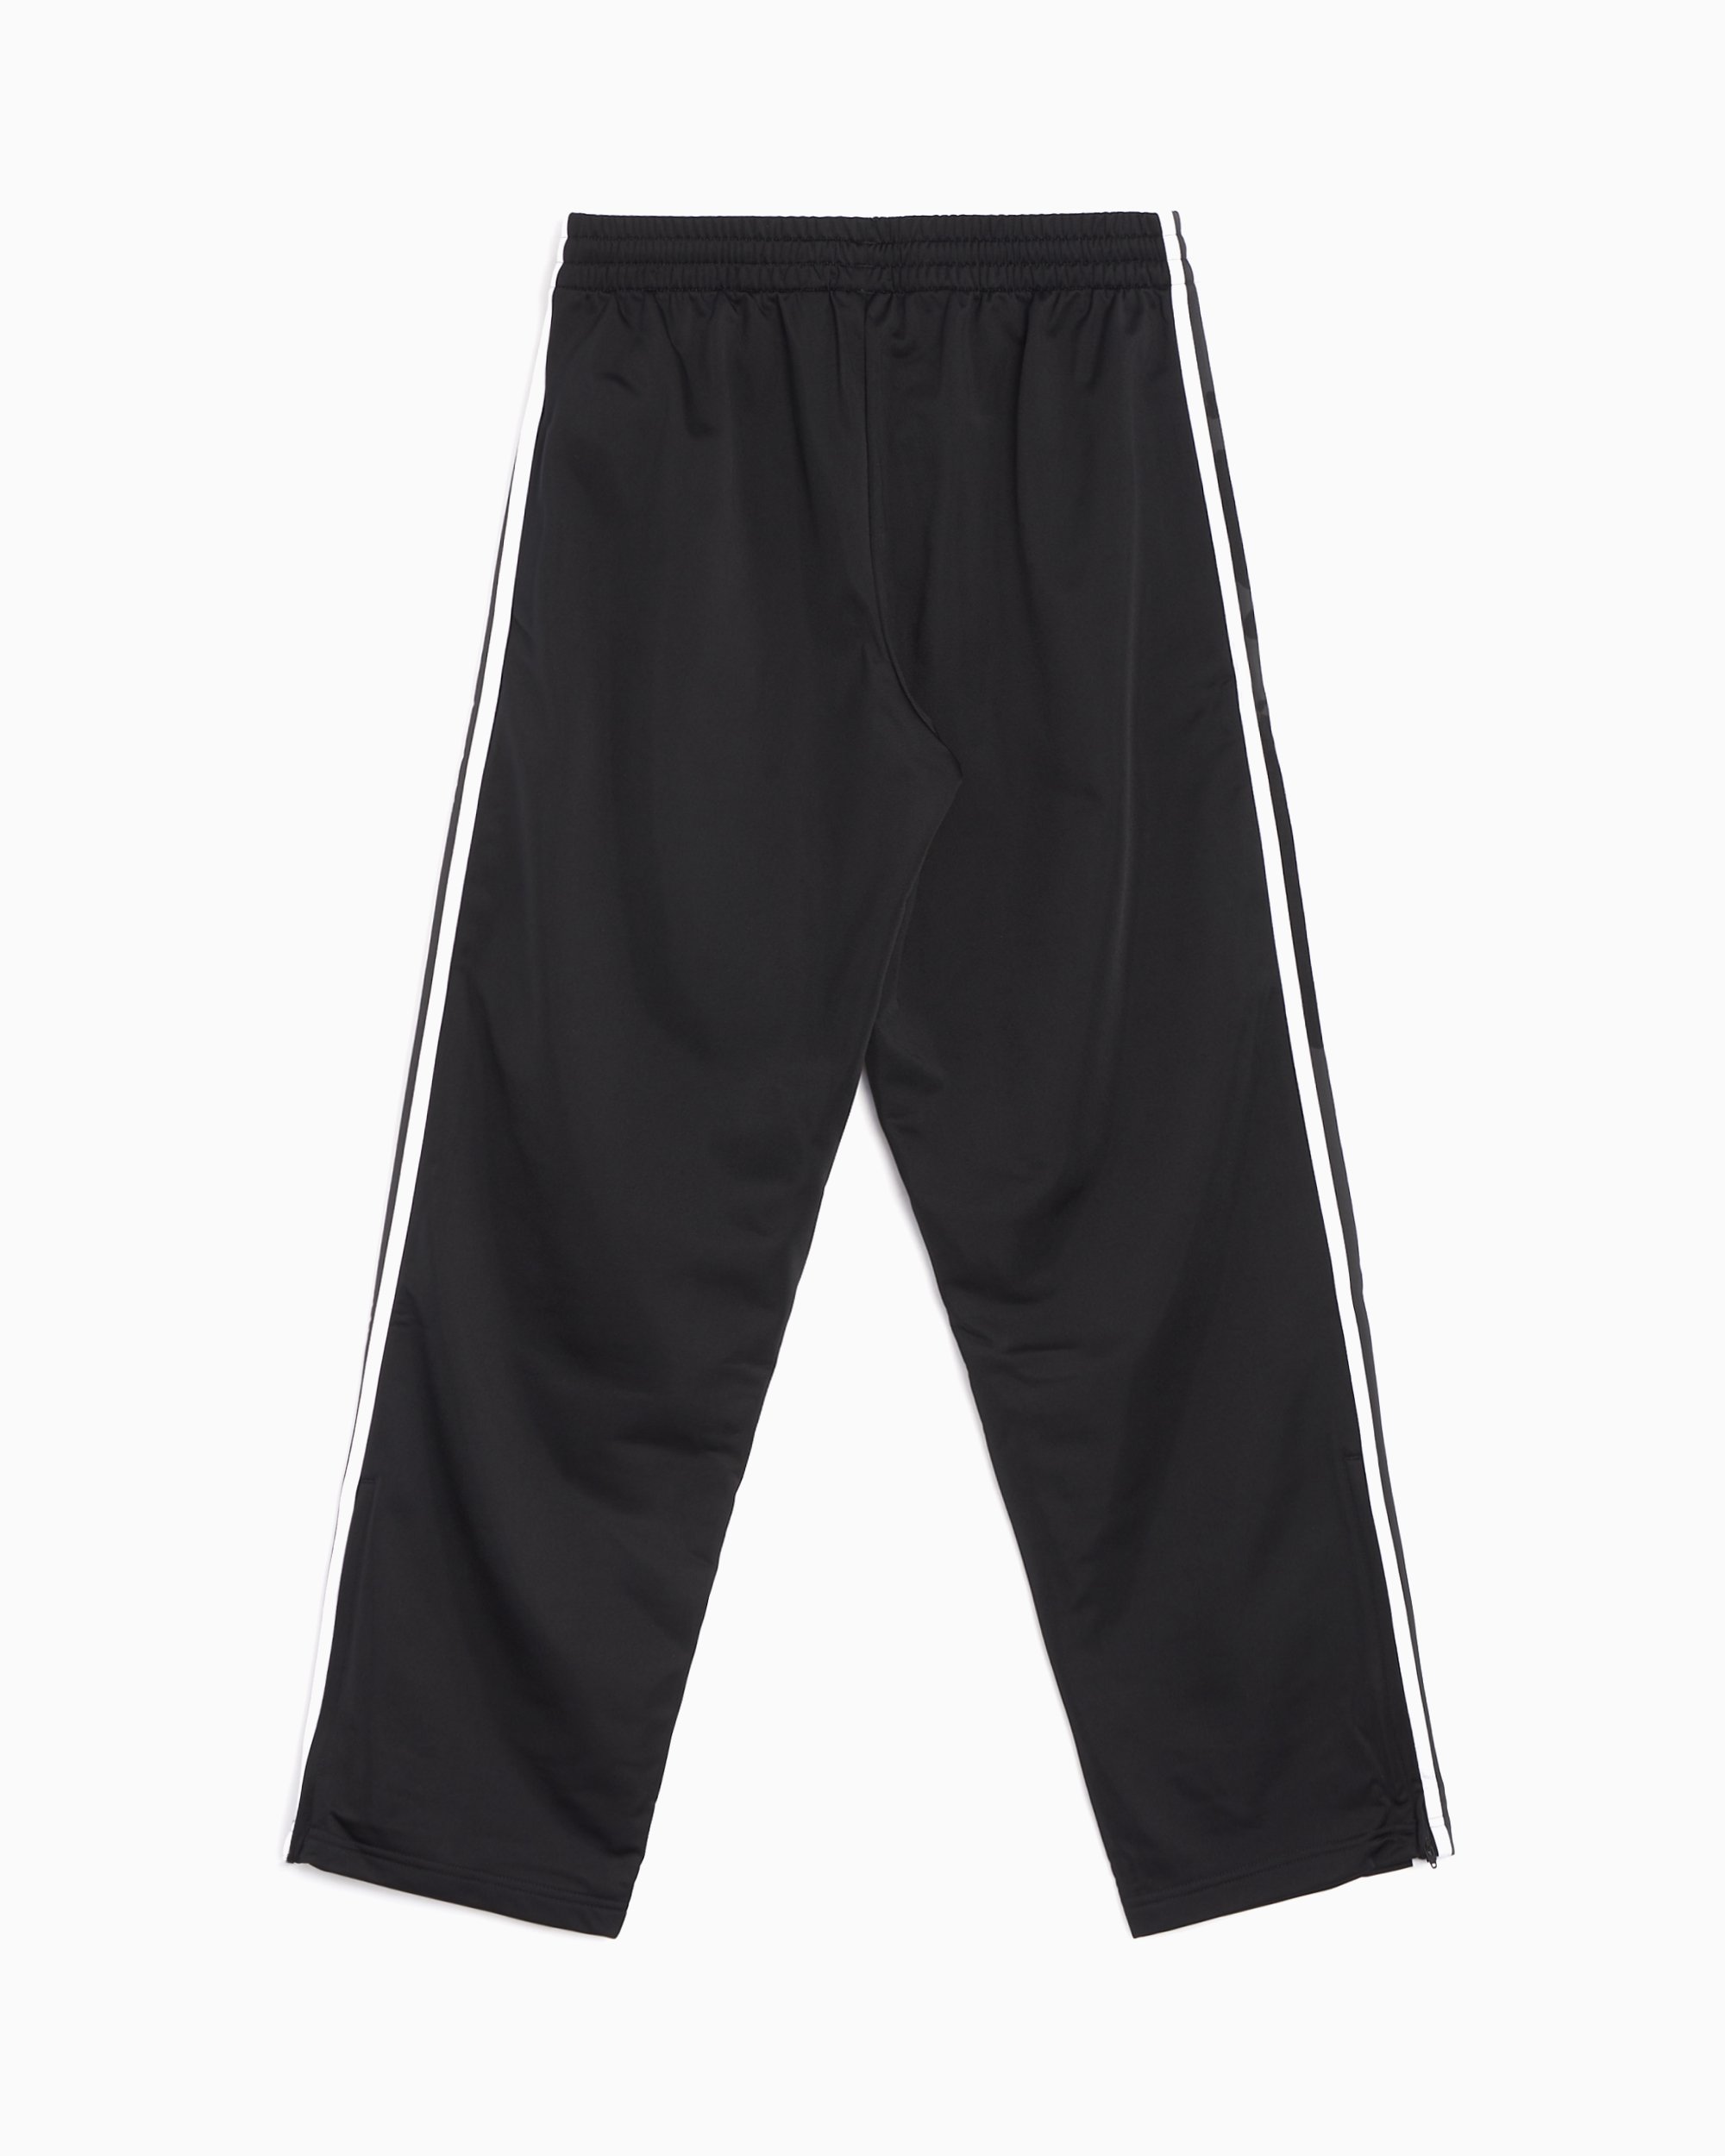 adidas Originals Adicolor Classics Firebird Men's Track Pants Black IJ7055